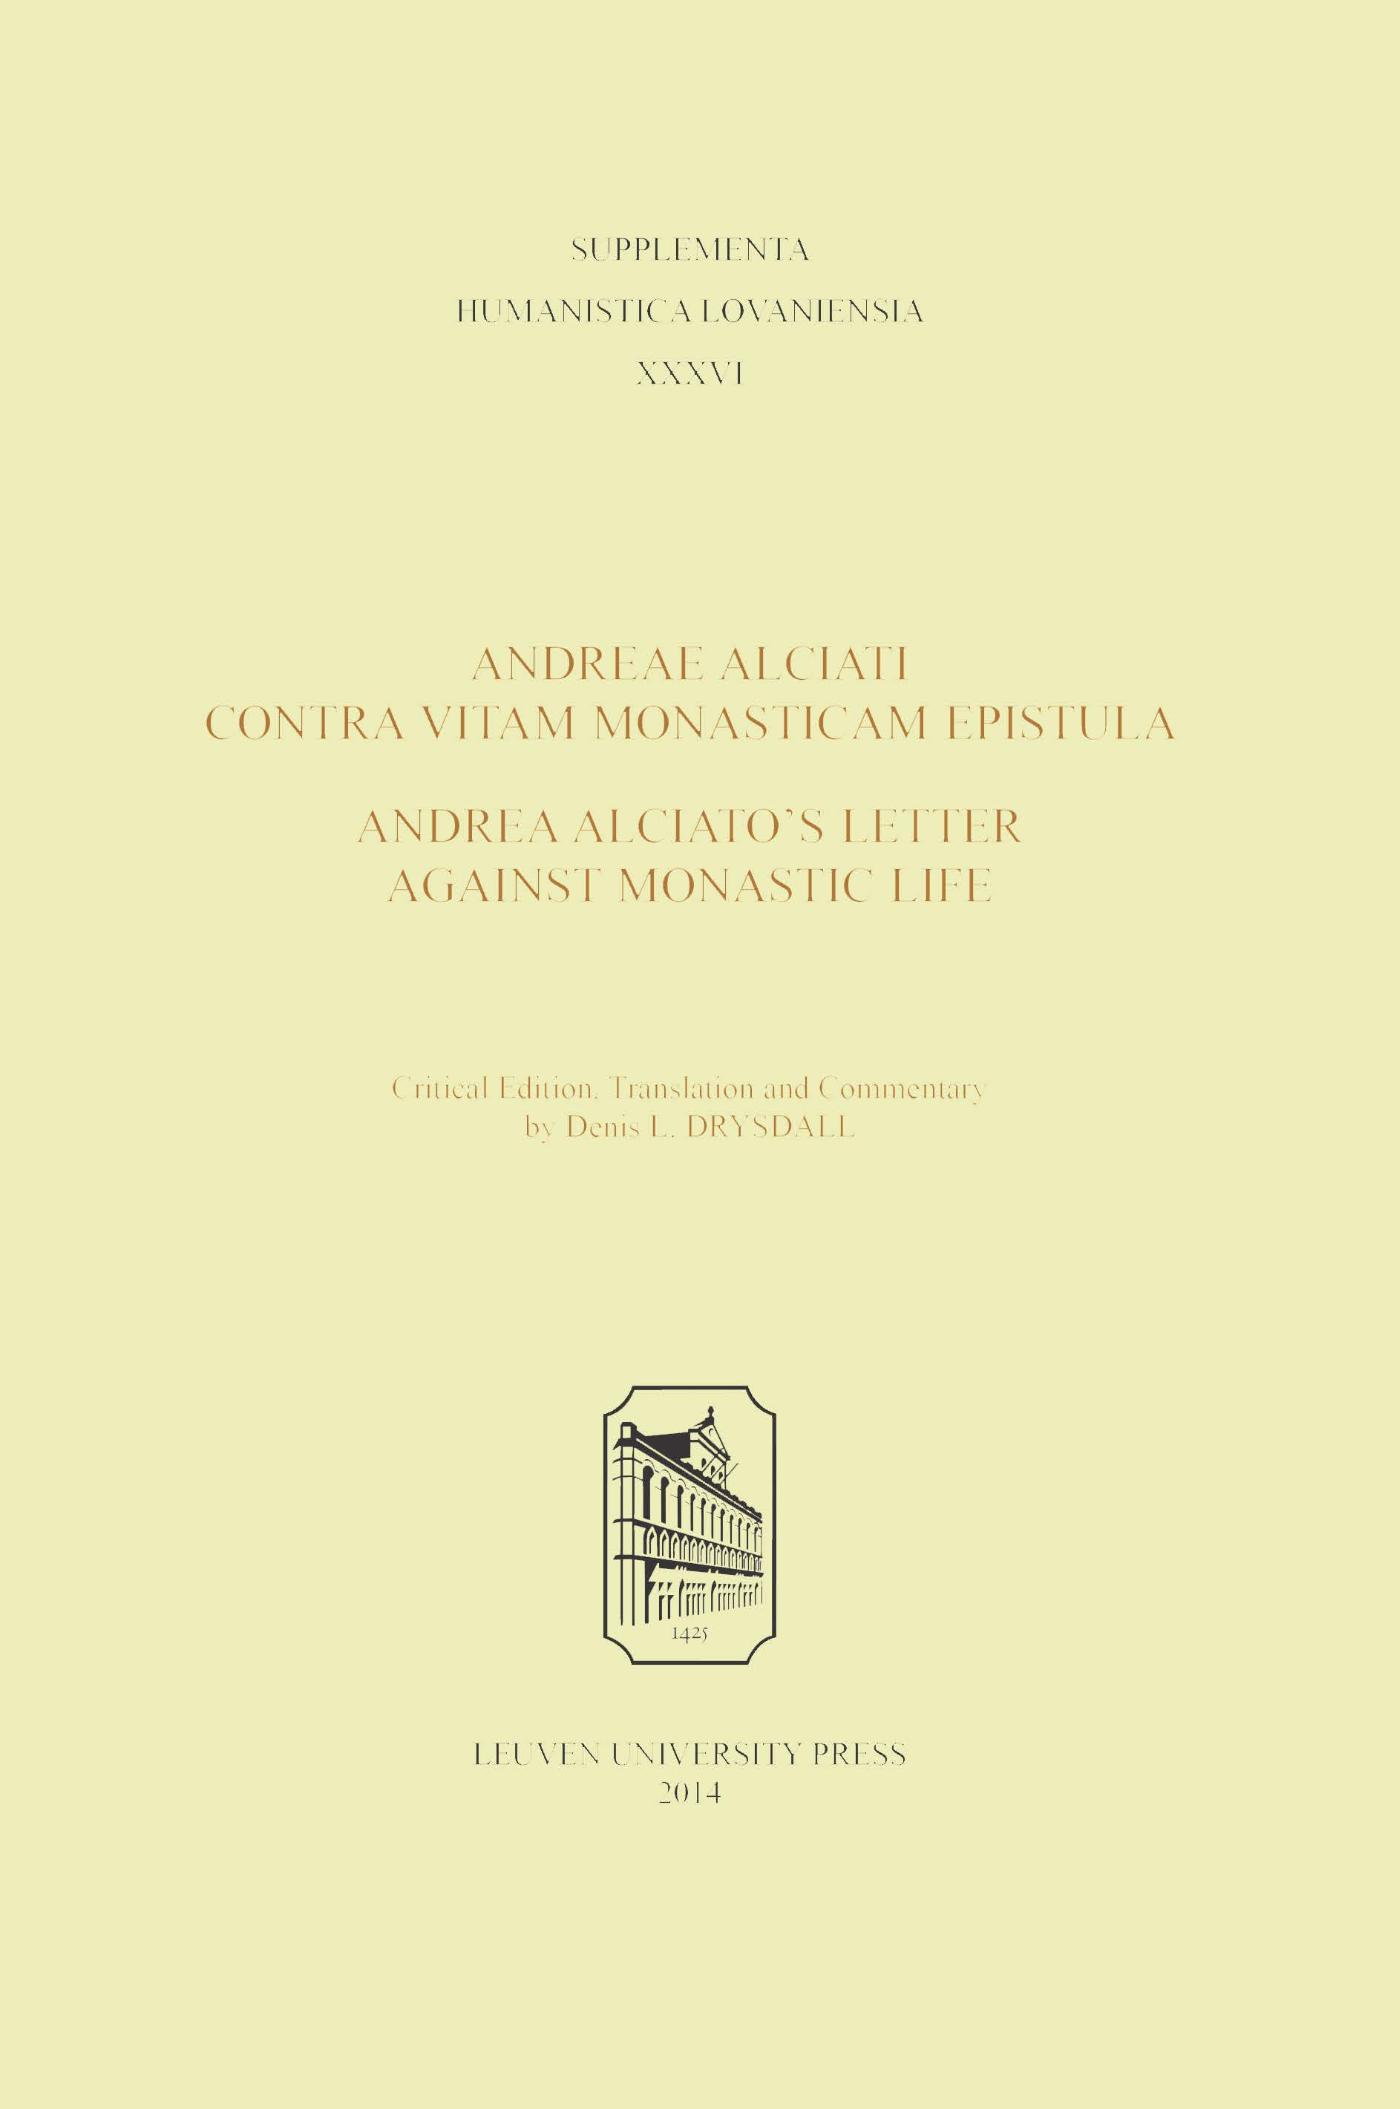 Andreae Alciati Contra vitam monasticam epistula - Andrea Alciatos Letter against monastic life